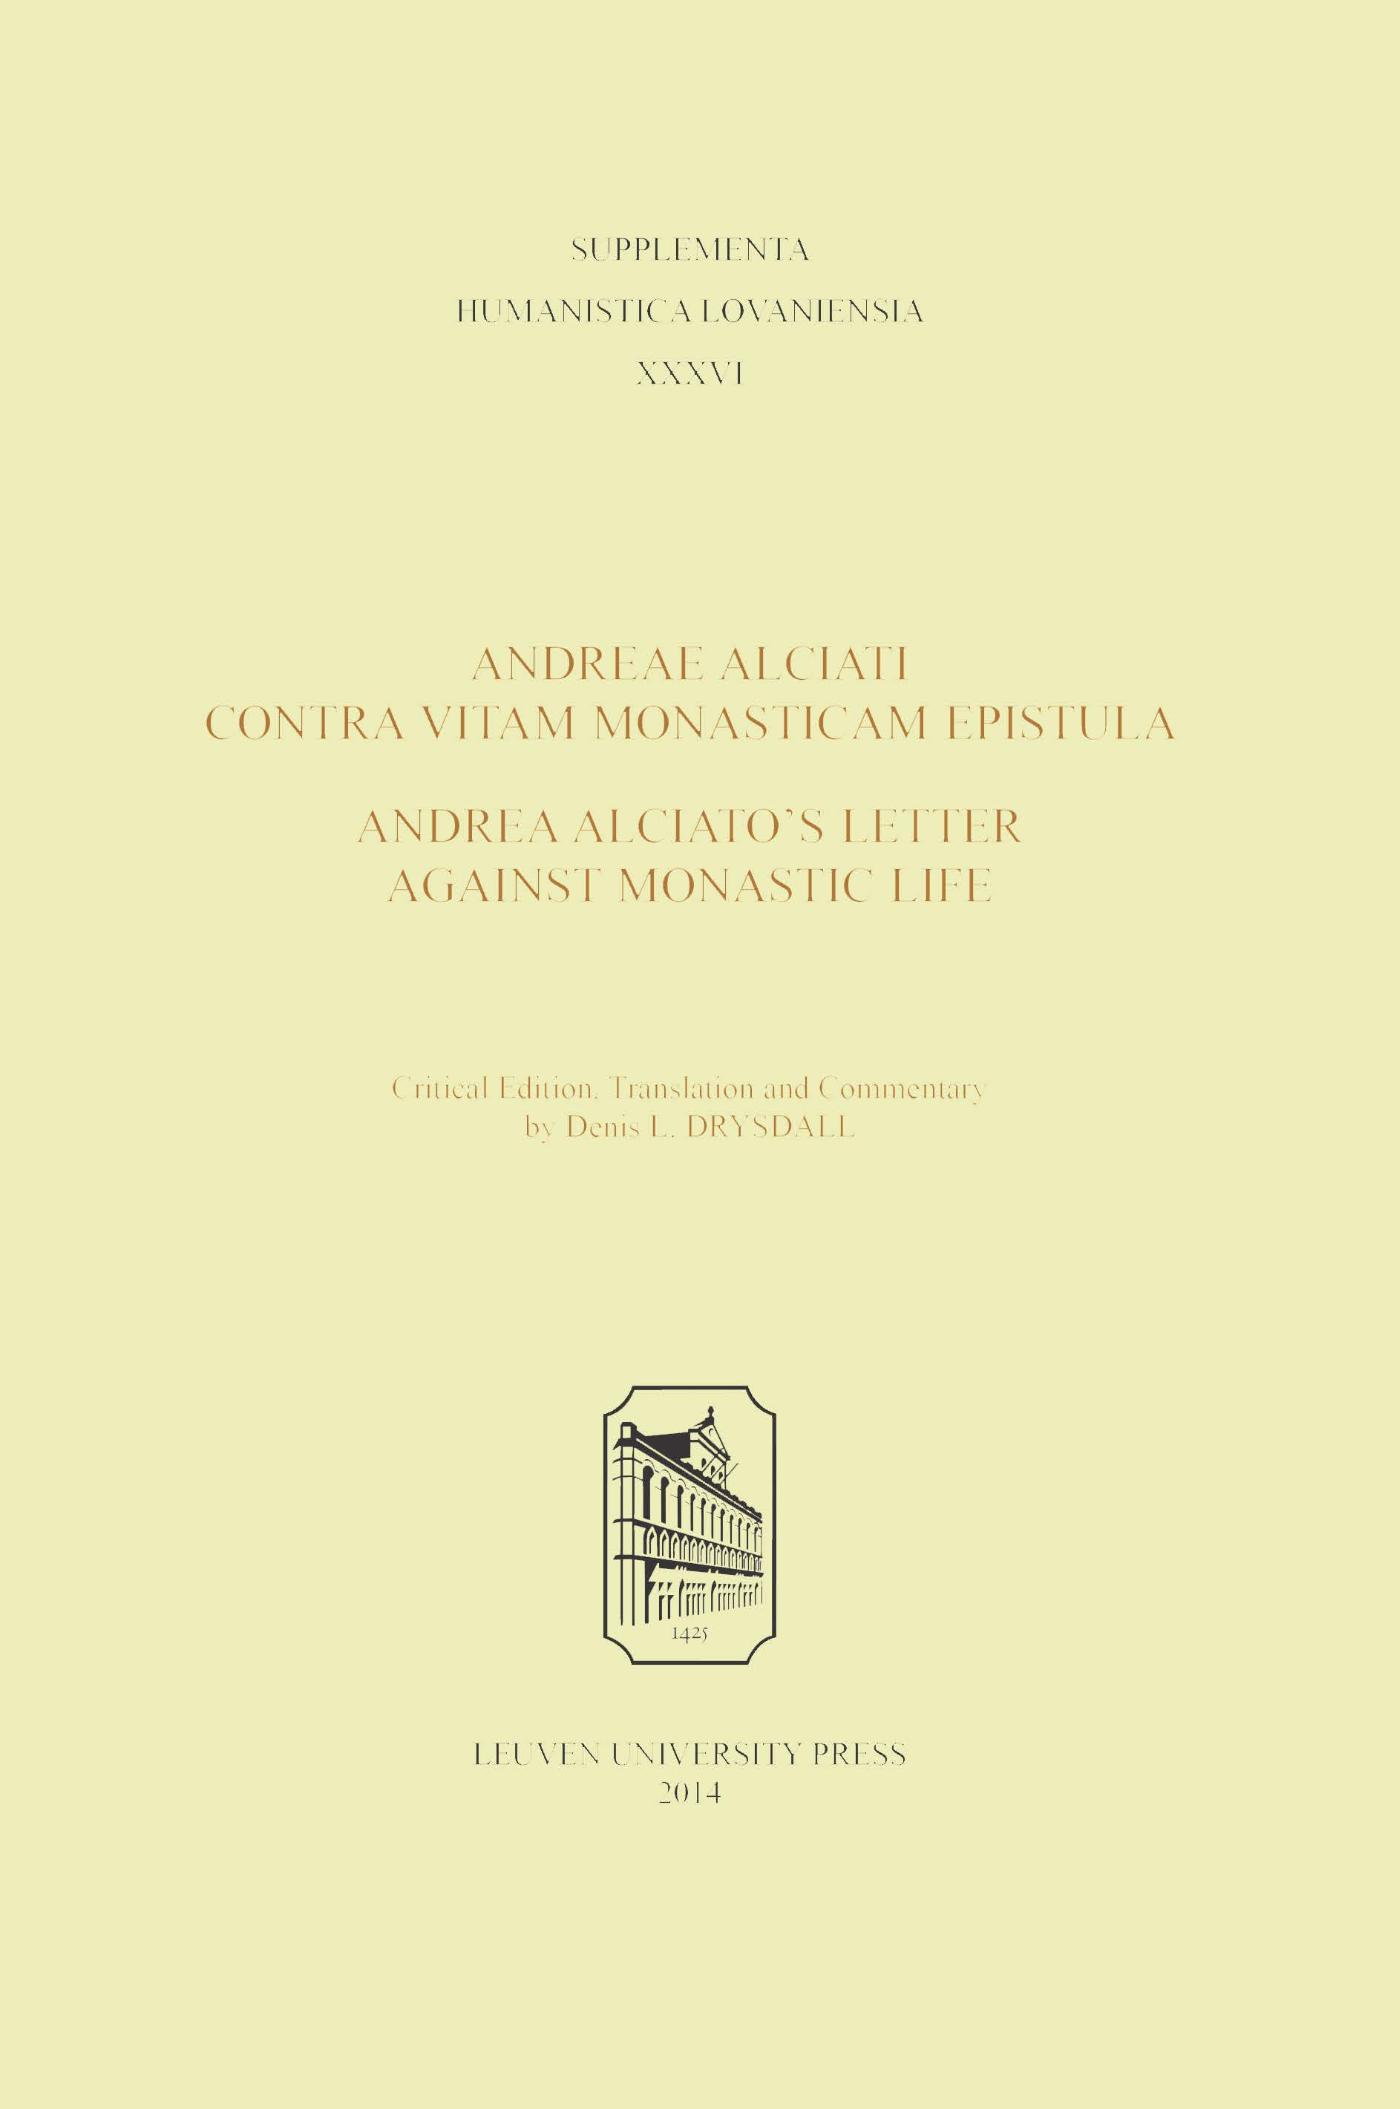 Andreae Alciati Contra vitam monasticam epistula - Andrea Alciatos Letter against monastic life